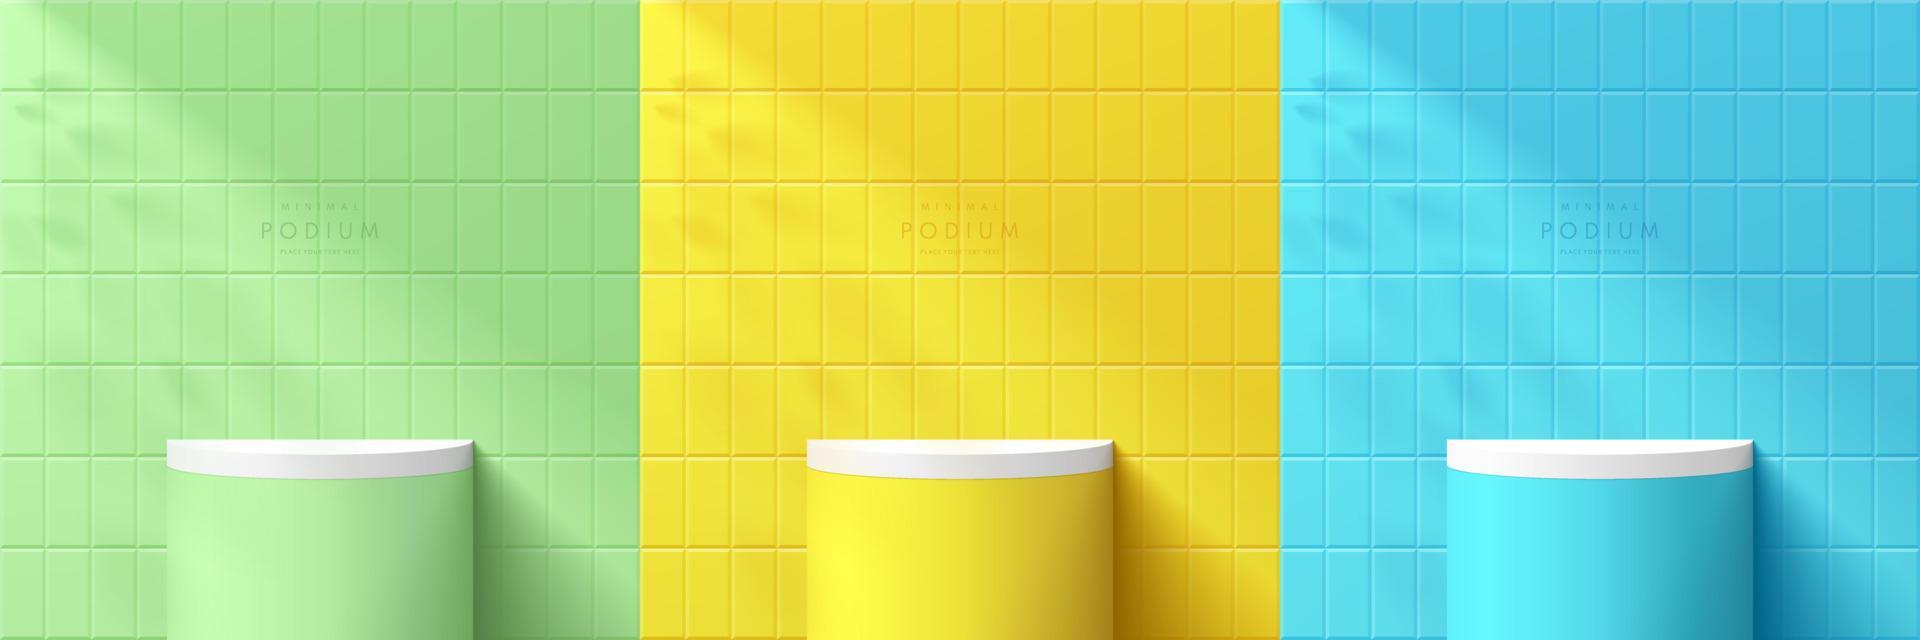 conjunto de pódio de suporte de cilindro 3d realista na cena de parede amarelo, azul e verde pastel com sobreposição de sombra de folha. cena mínima abstrata para exibição de produtos de maquete, vitrine de palco. formas geométricas vetoriais. vetor